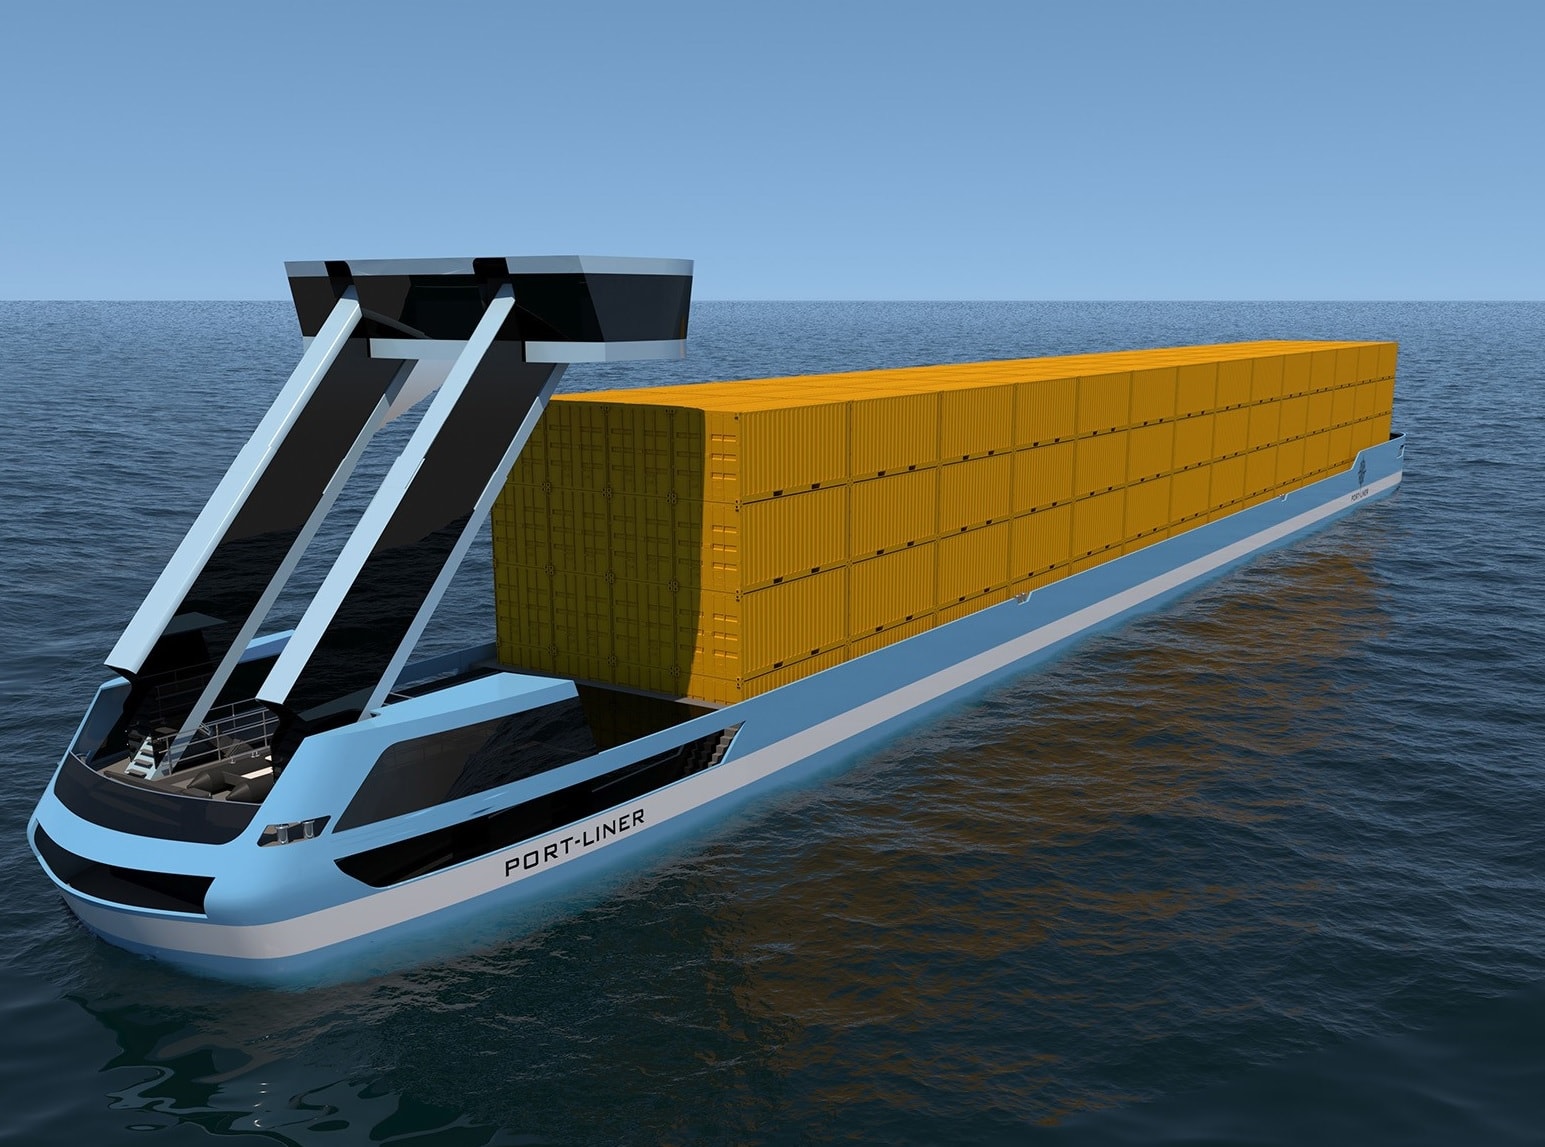 Port Liner développe un porte-conteneur à propulsion électrique